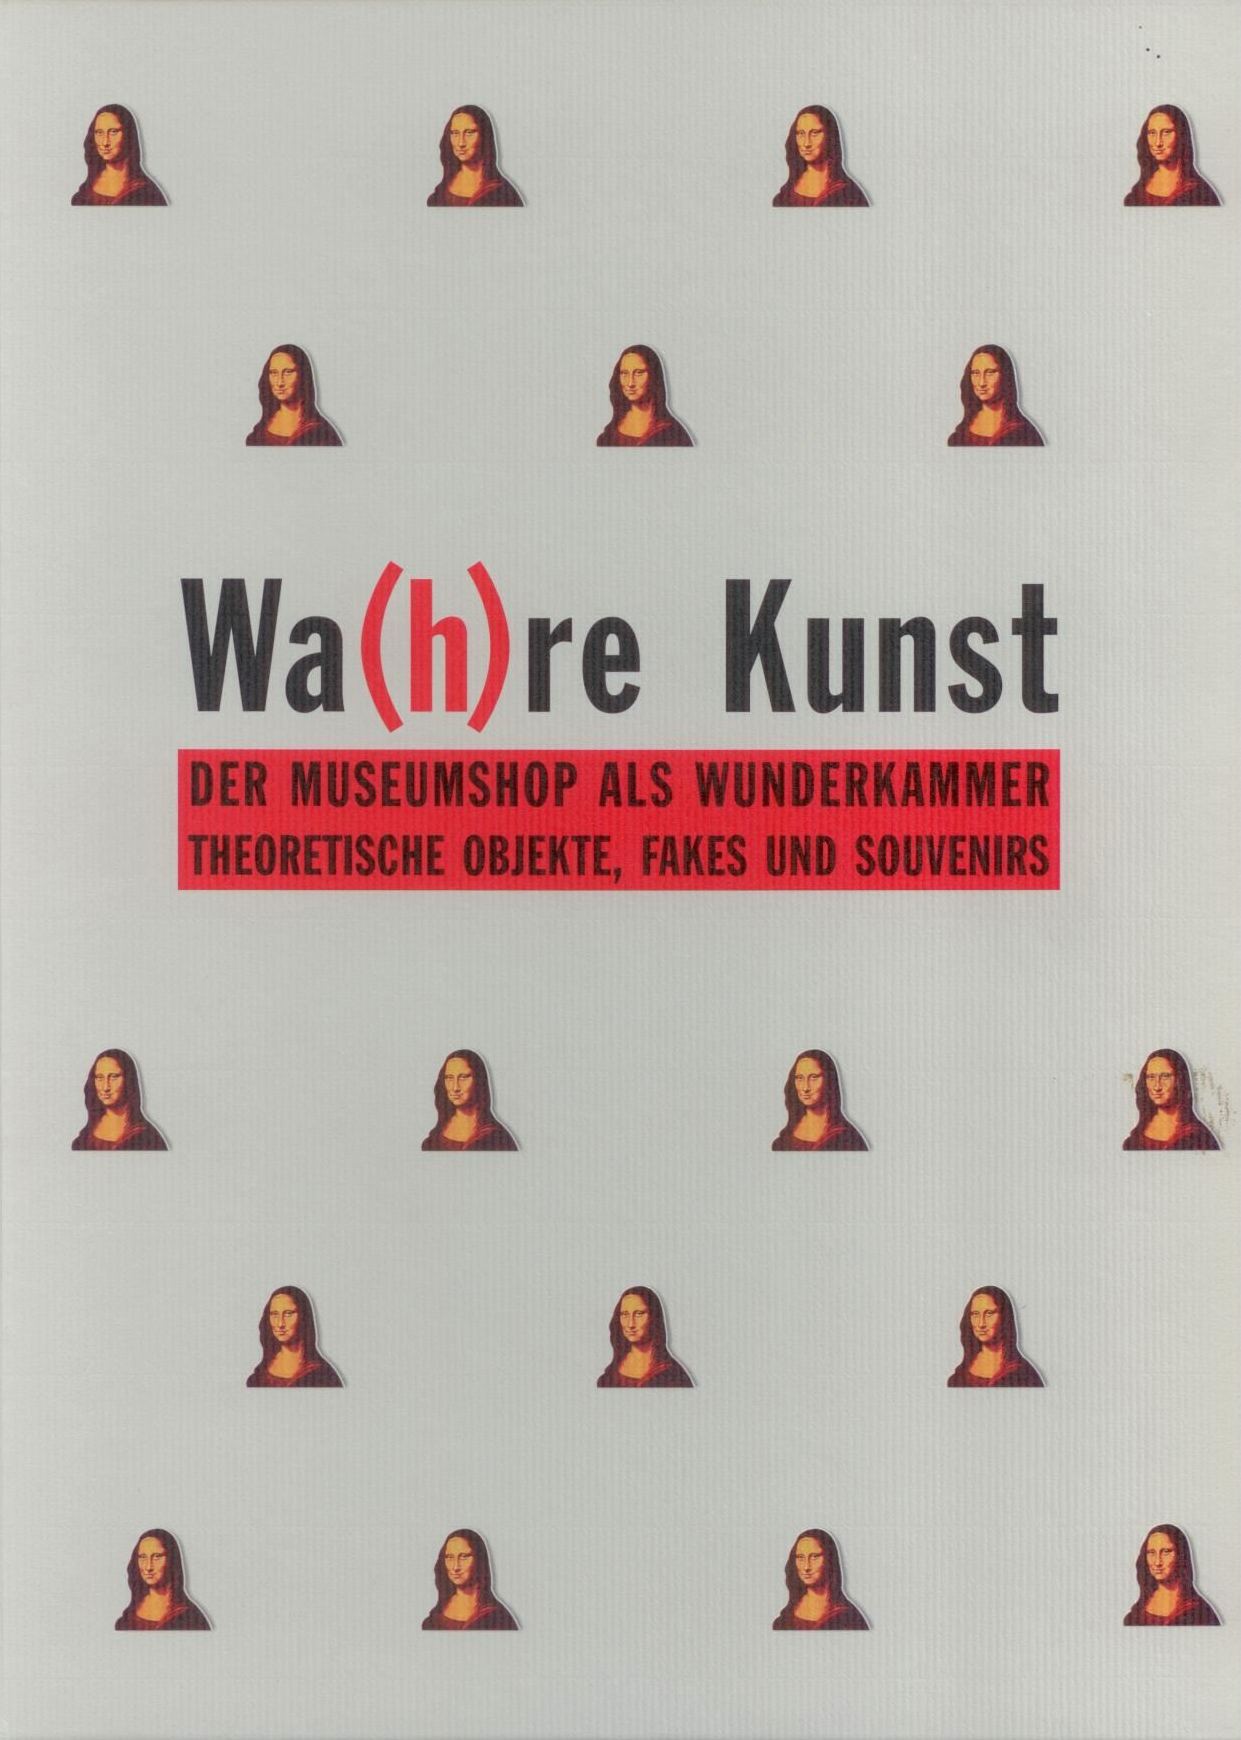 Wa(h)re Kunst. Der Museumsshop als Wunderkammer, Bild: Theoretische Objekte, Fakes und Souvenirs. Frankfurt: Anabas, 1997..